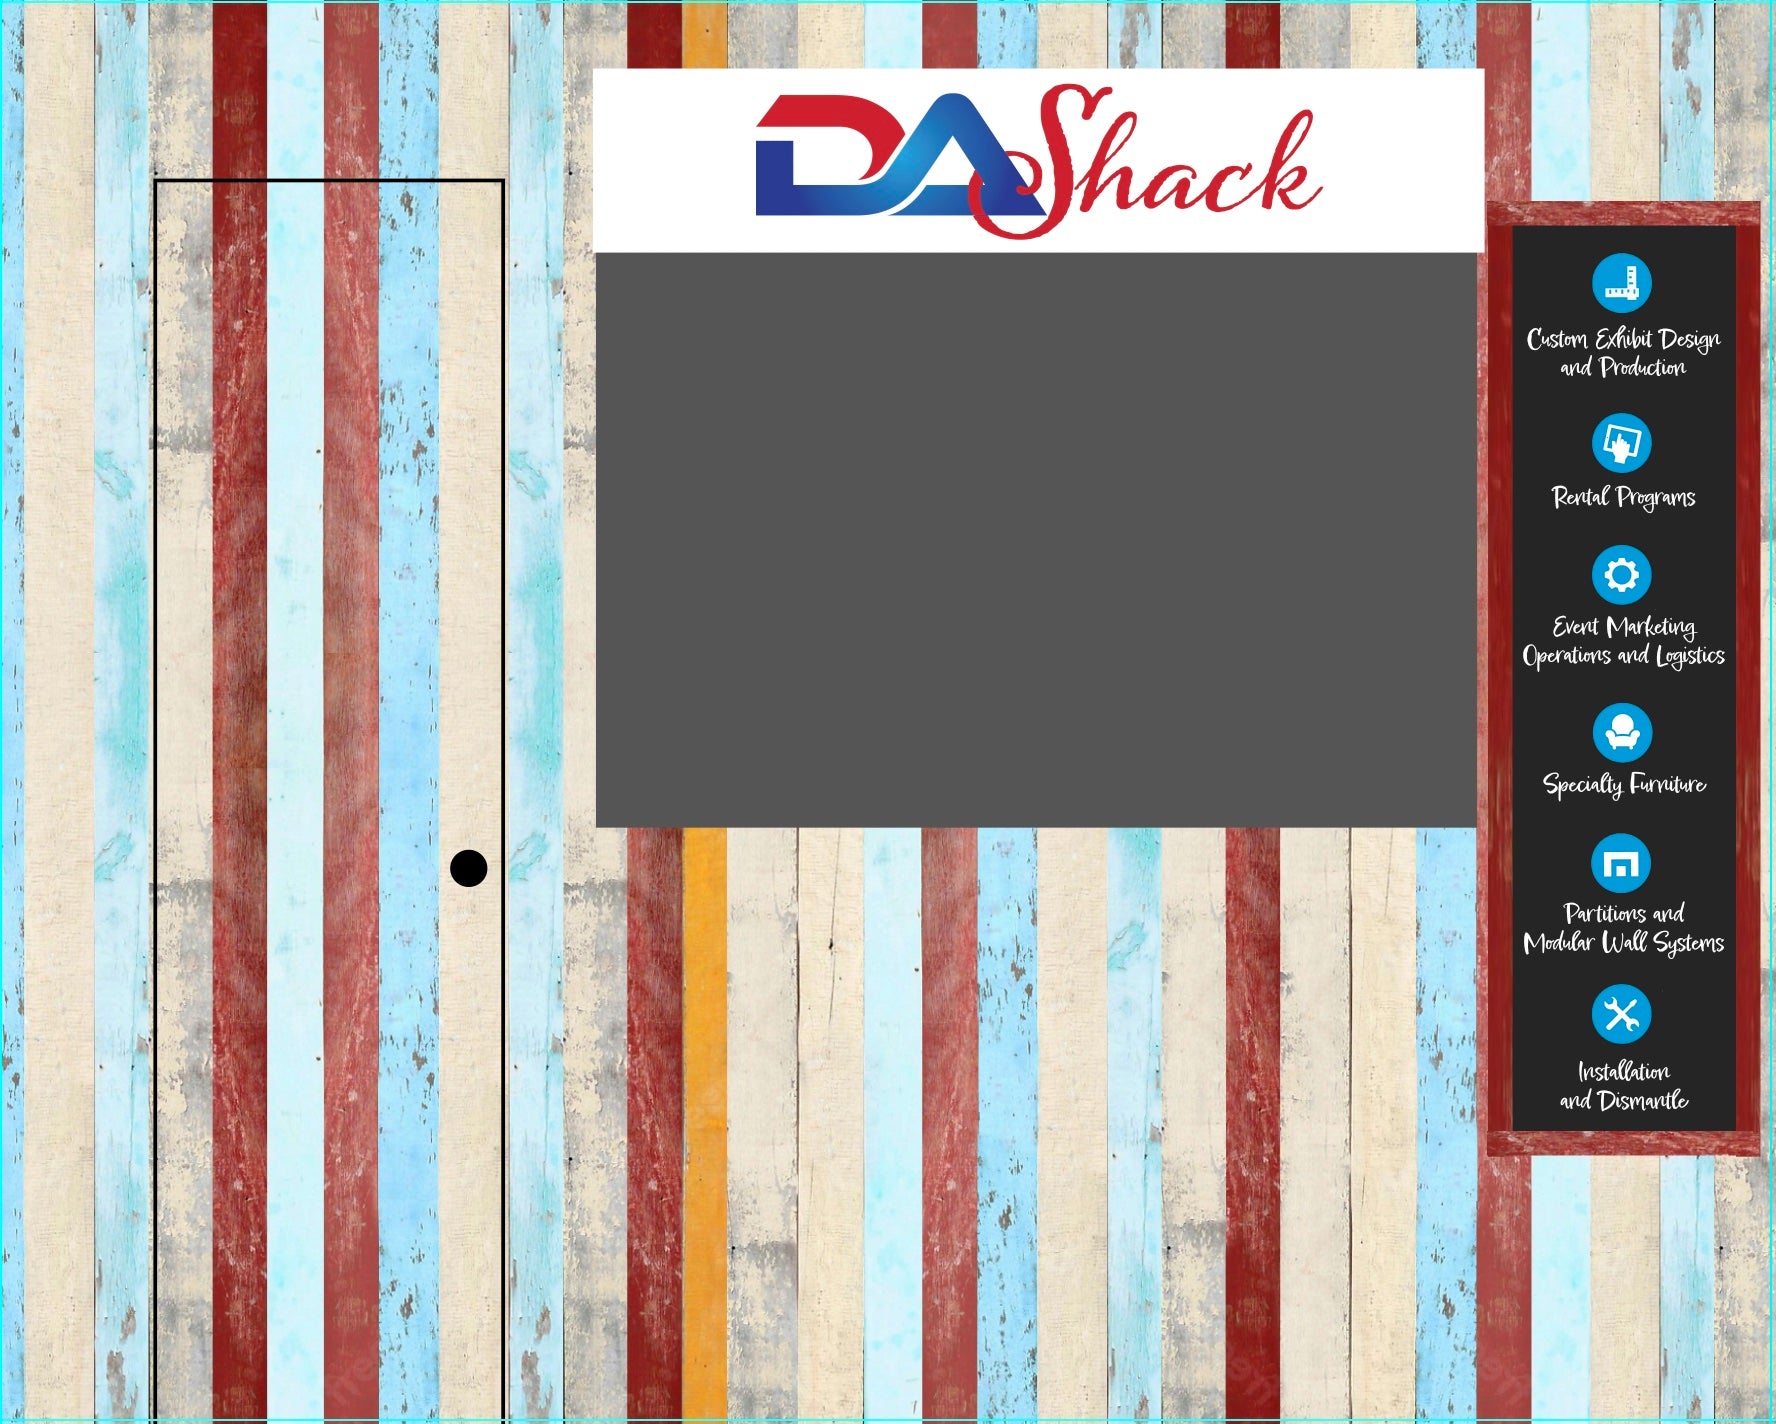 DA Shack: Modular Concession Stand